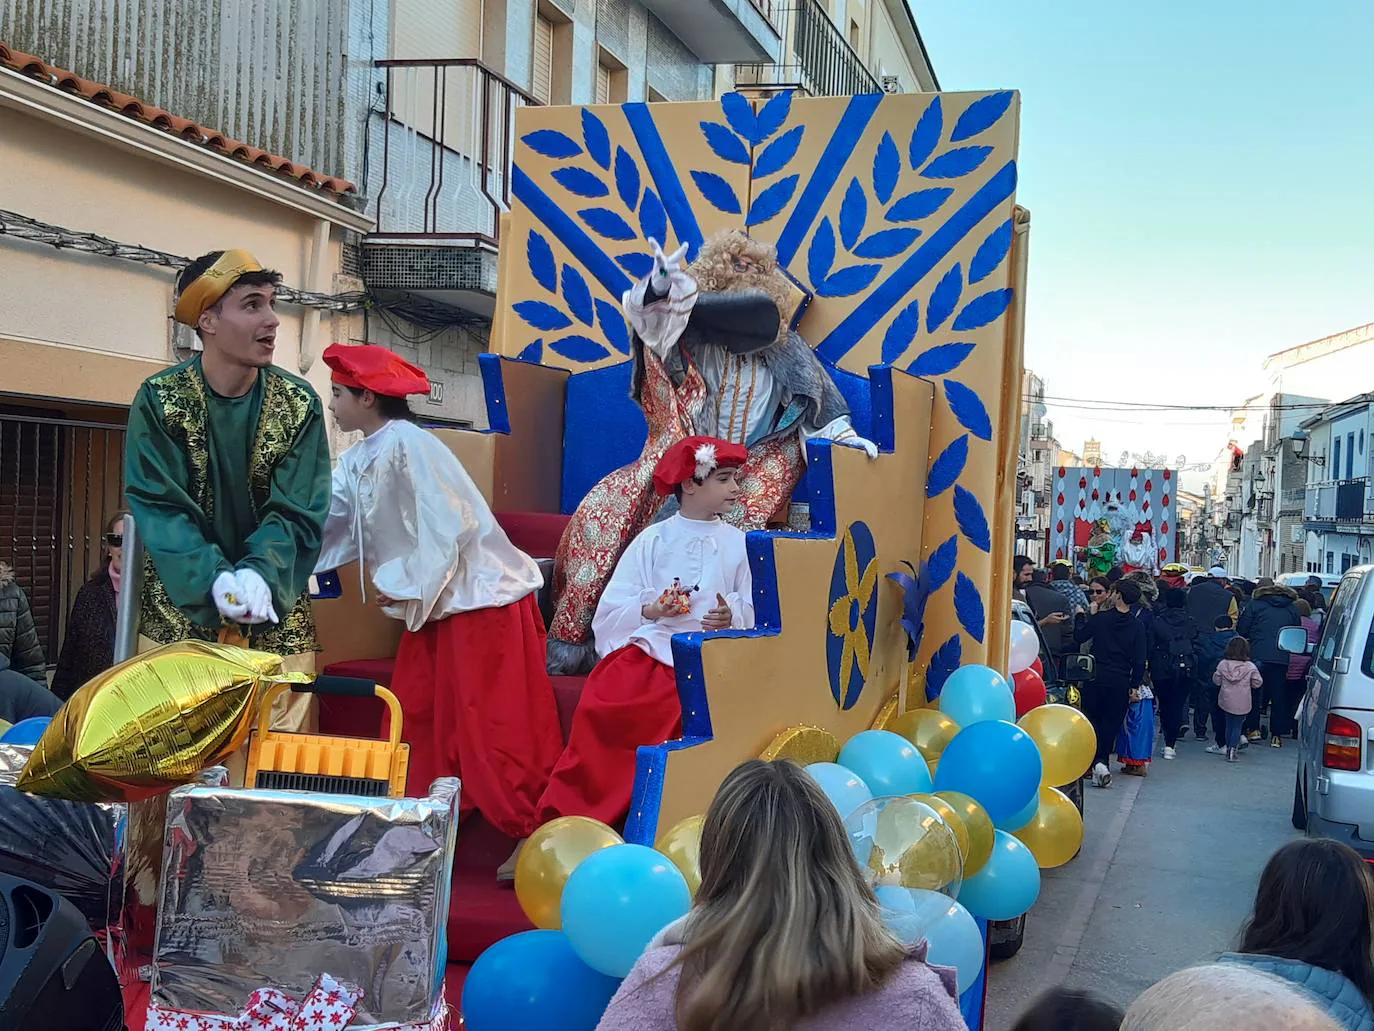 Imagen secundaria 1 - Tarde de ilusión en Casar de Cáceres por la llegada de los Reyes Magos